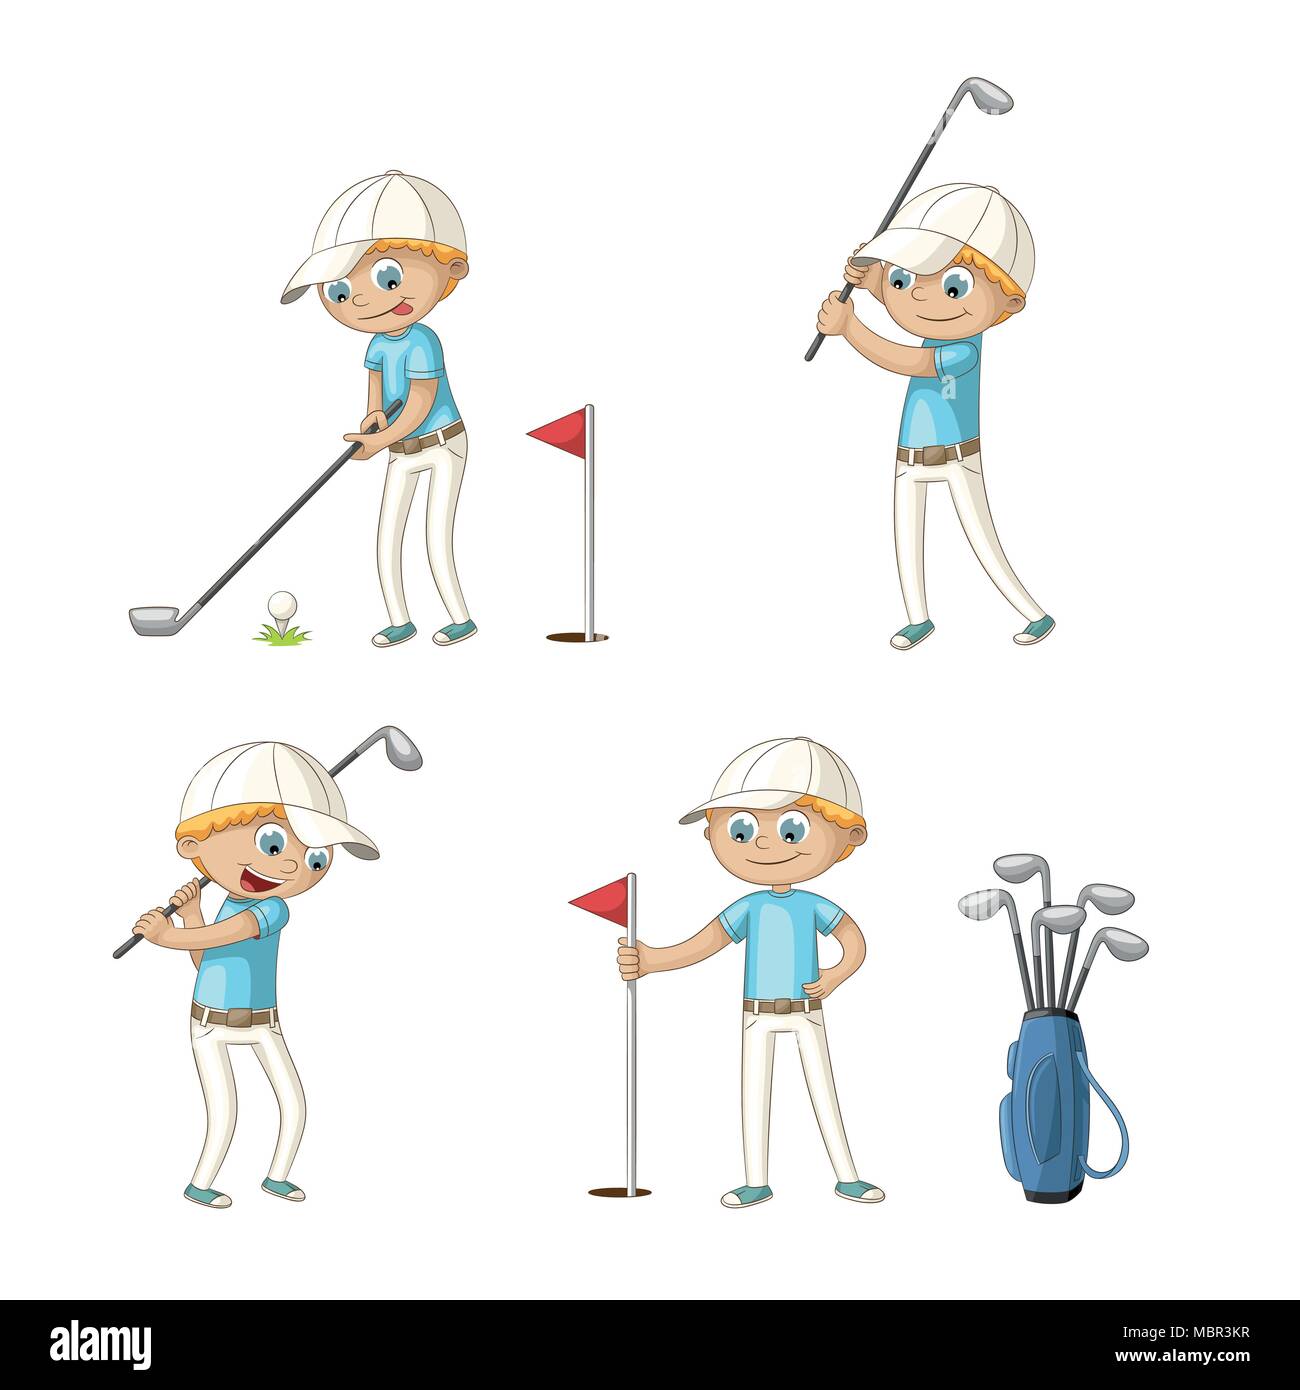 Ragazzo giocando a golf. Divertente personaggio dei fumetti. Isolato su sfondo bianco. Illustrazione Vettoriale